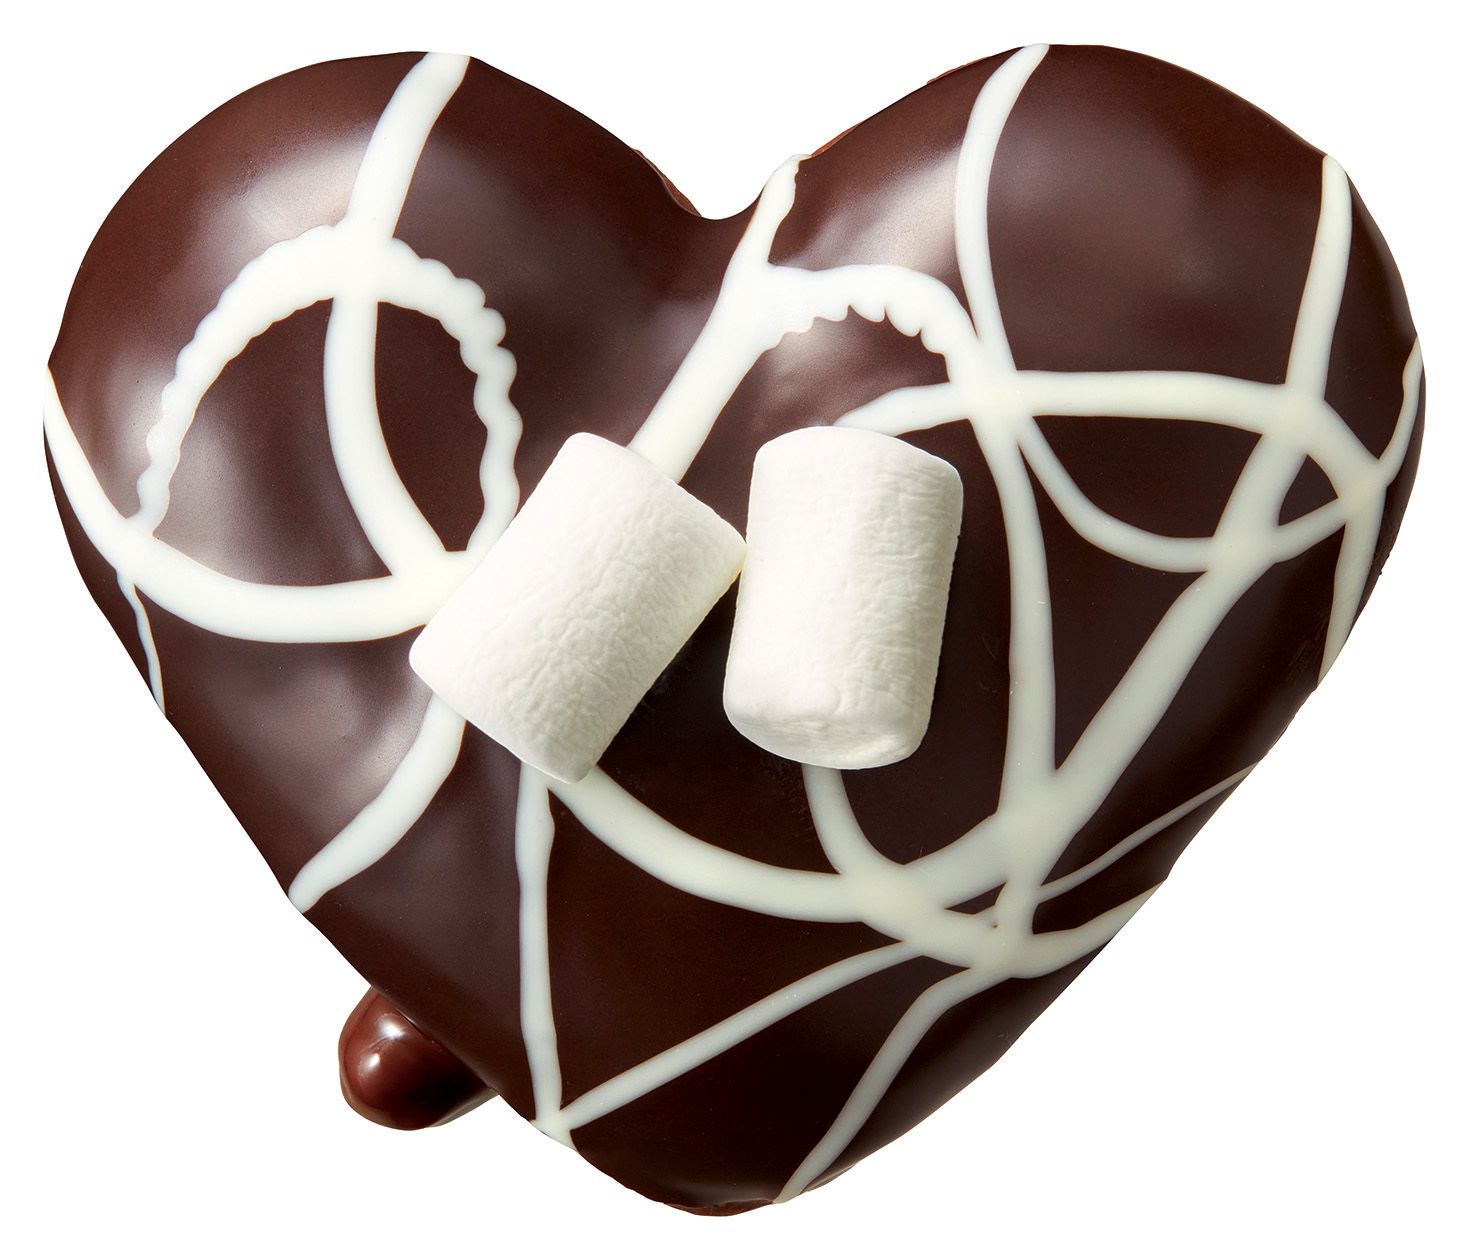 バレンタインシーズンにぴったりな“チョコづくし”のドーナツが6種登場！ まるでチョコレート専門店のような心躍るスイーツコレクション 『LOVE CHOCOLATE!』  #Z世代Pick